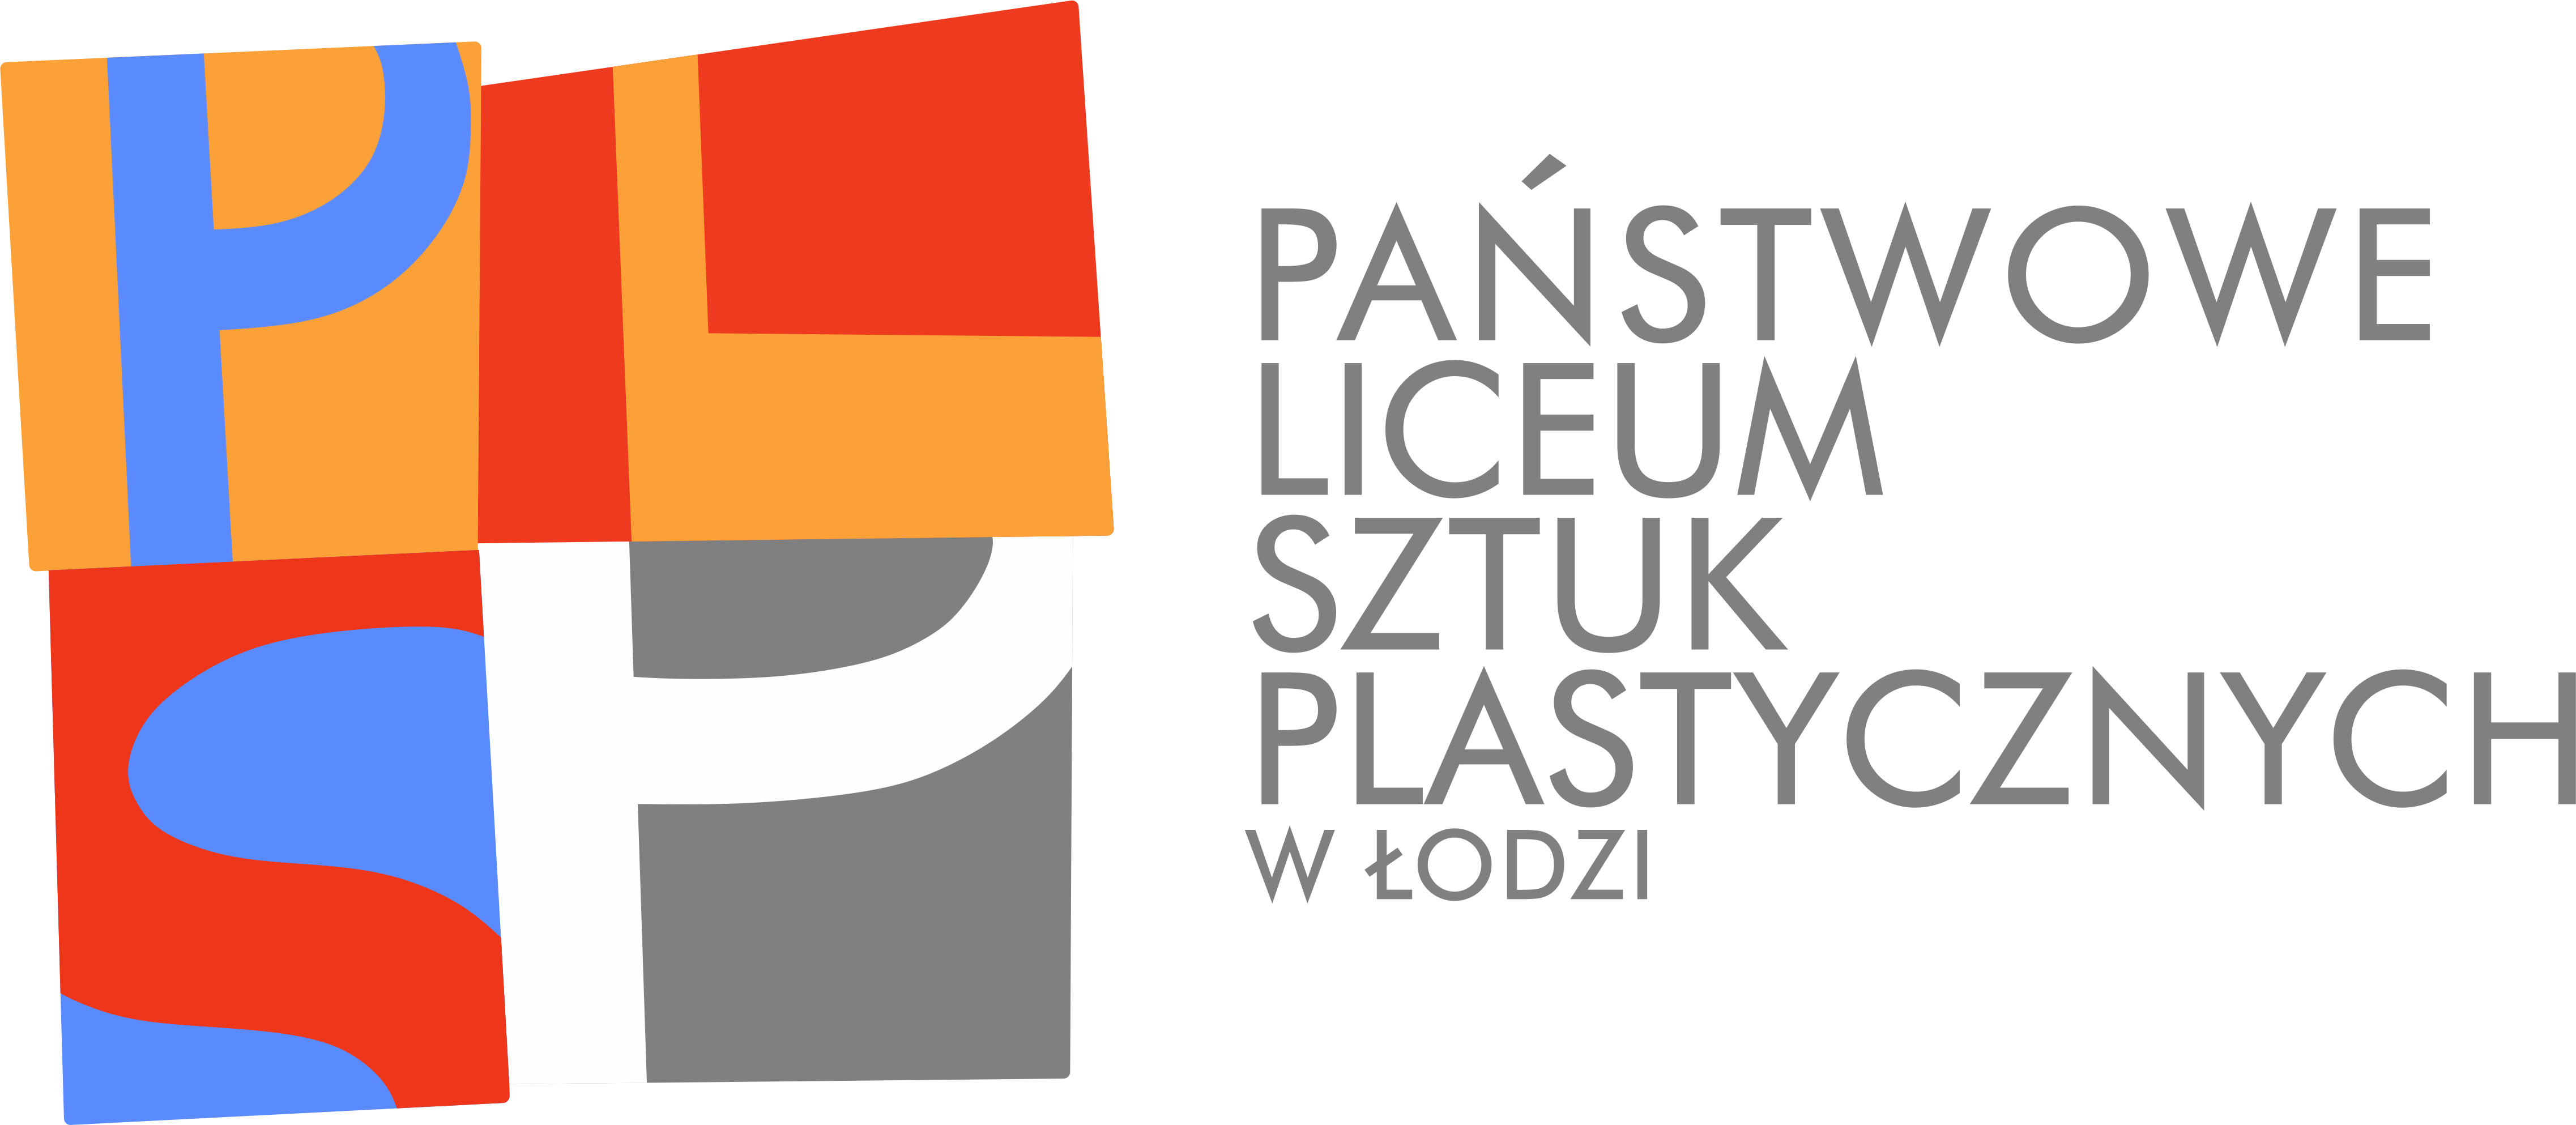 Państwowe Liceum Sztuk Plastycznych w Łodzi